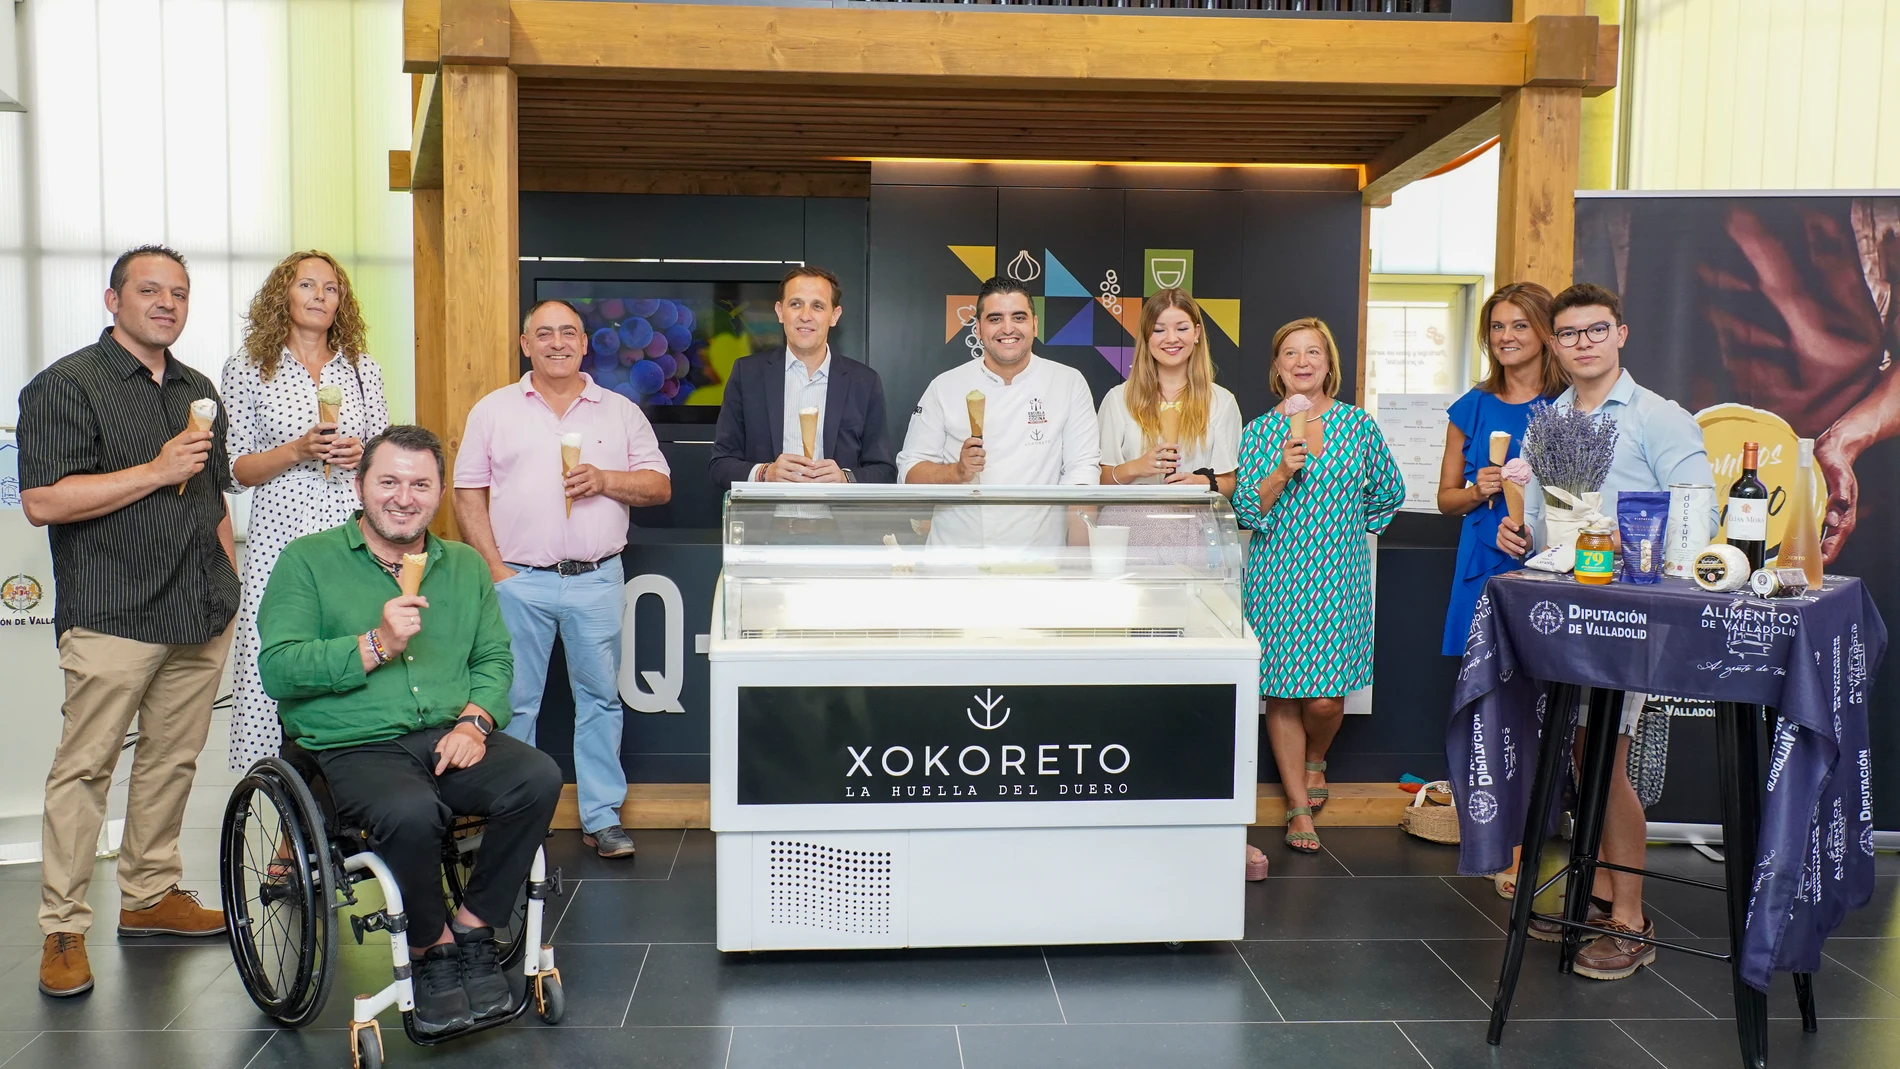 El presidente de la Diputación de Valladolid, Conrado Íscar, presenta los helados artesanos de Xocoreto realizados con productos de Alimentos de Valladolid